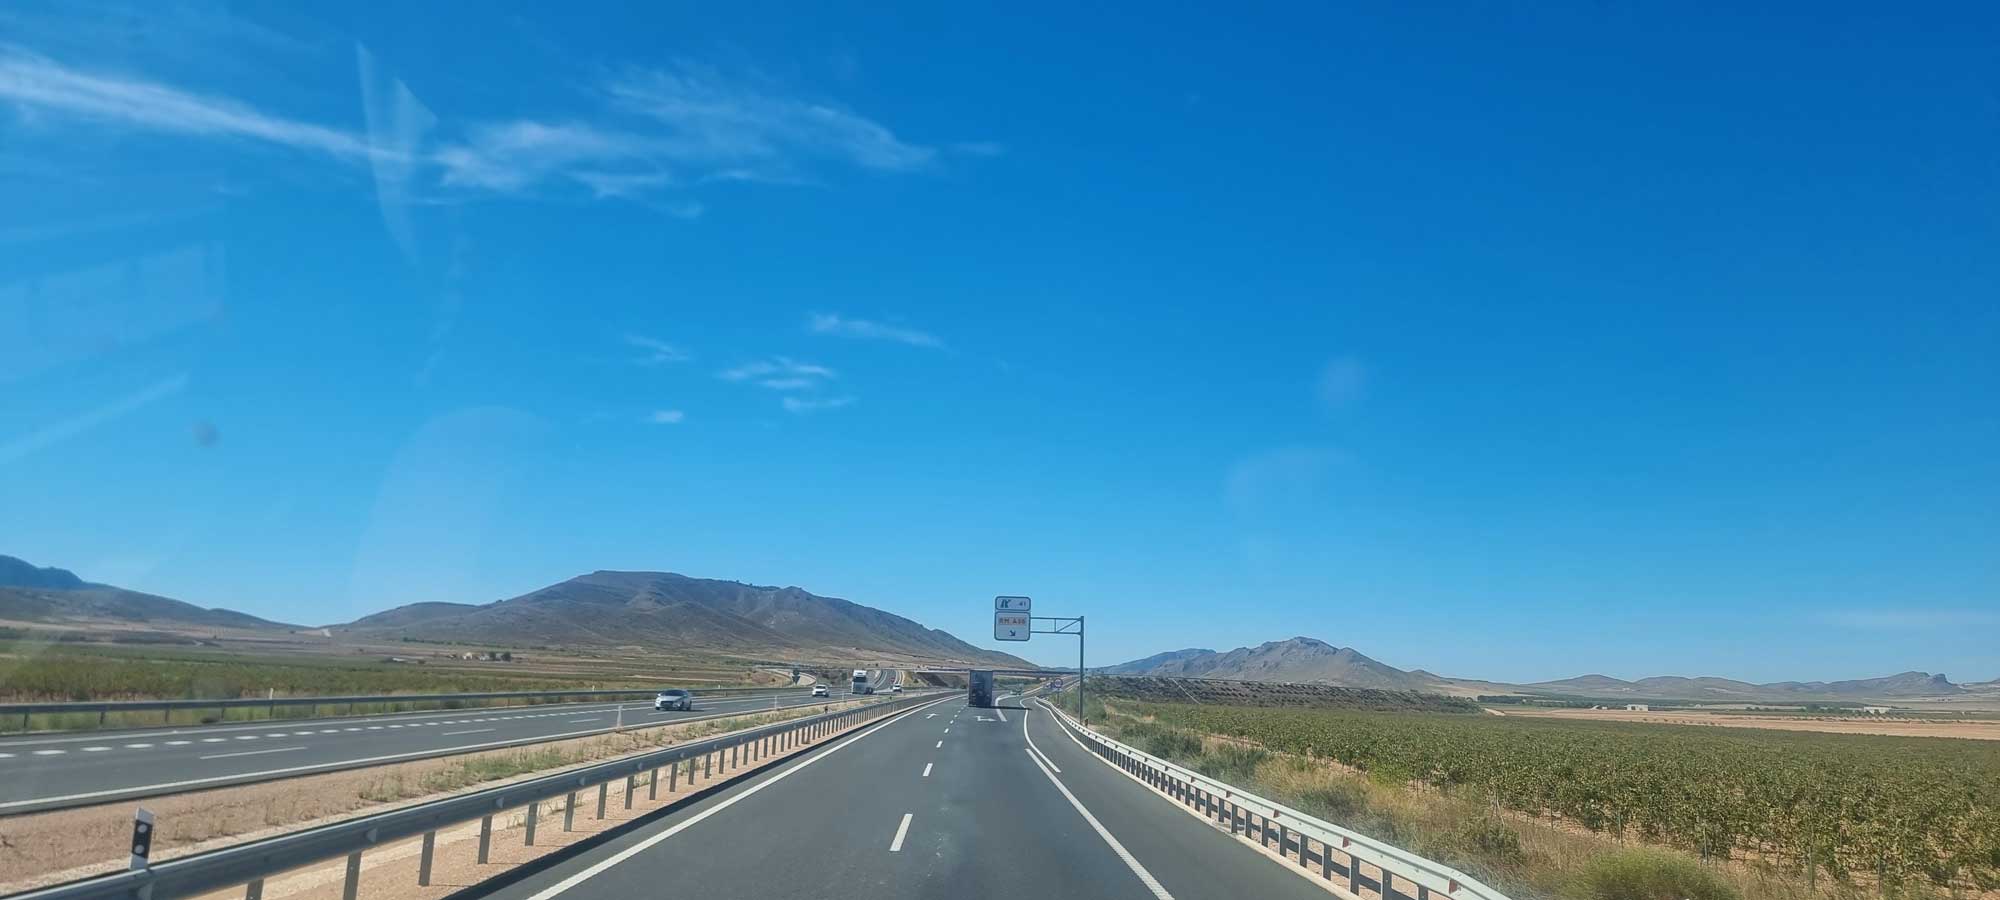 Auf dem Weg zum Ziel - Anreise am ersten Tag der Andalusien ERFAHREN 2022